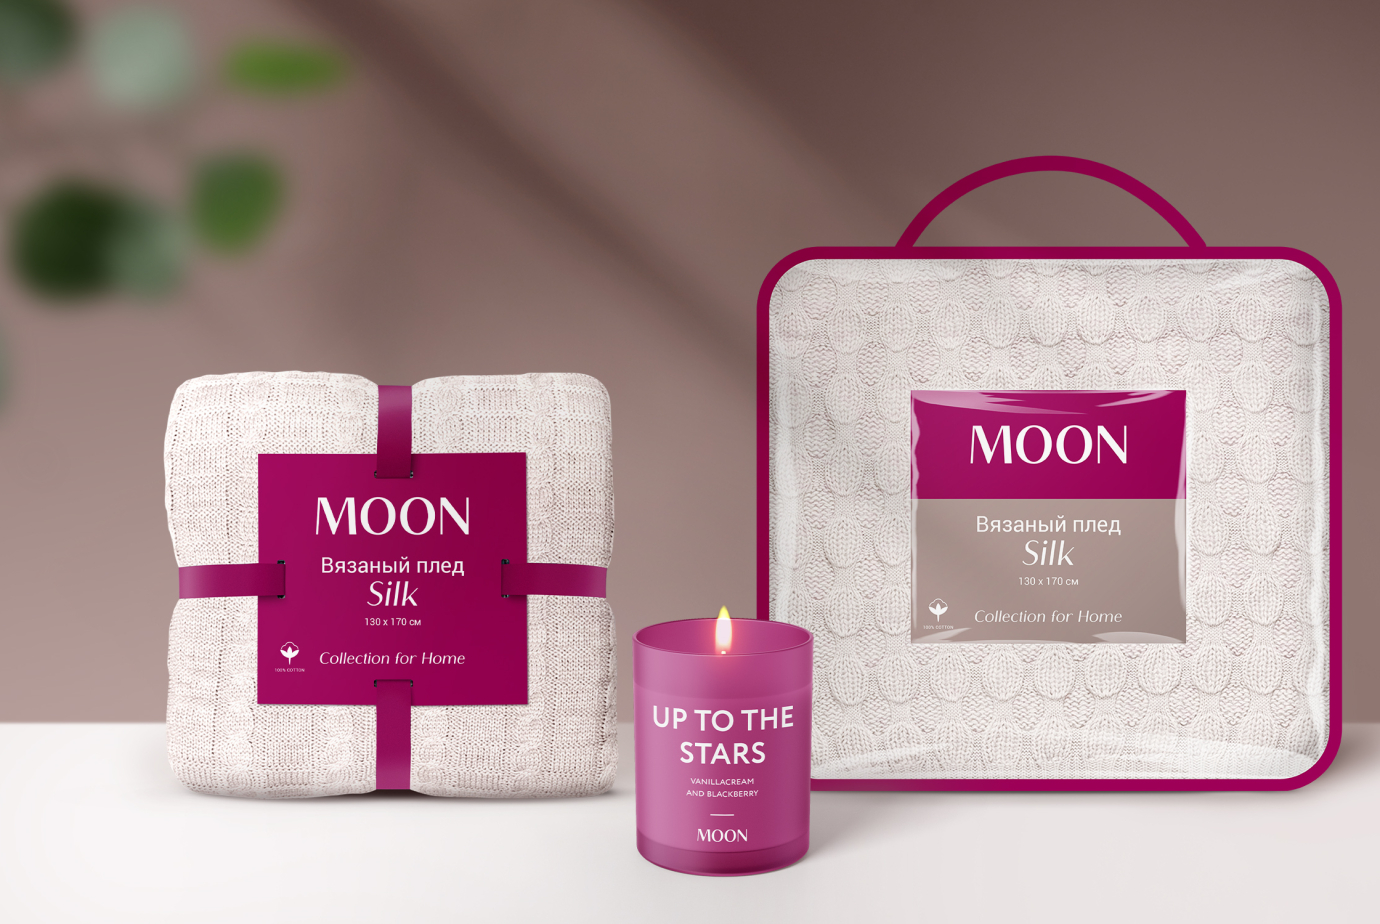 Дизайн упаковки и этикетки аксессуаров для дома под брендом Moon